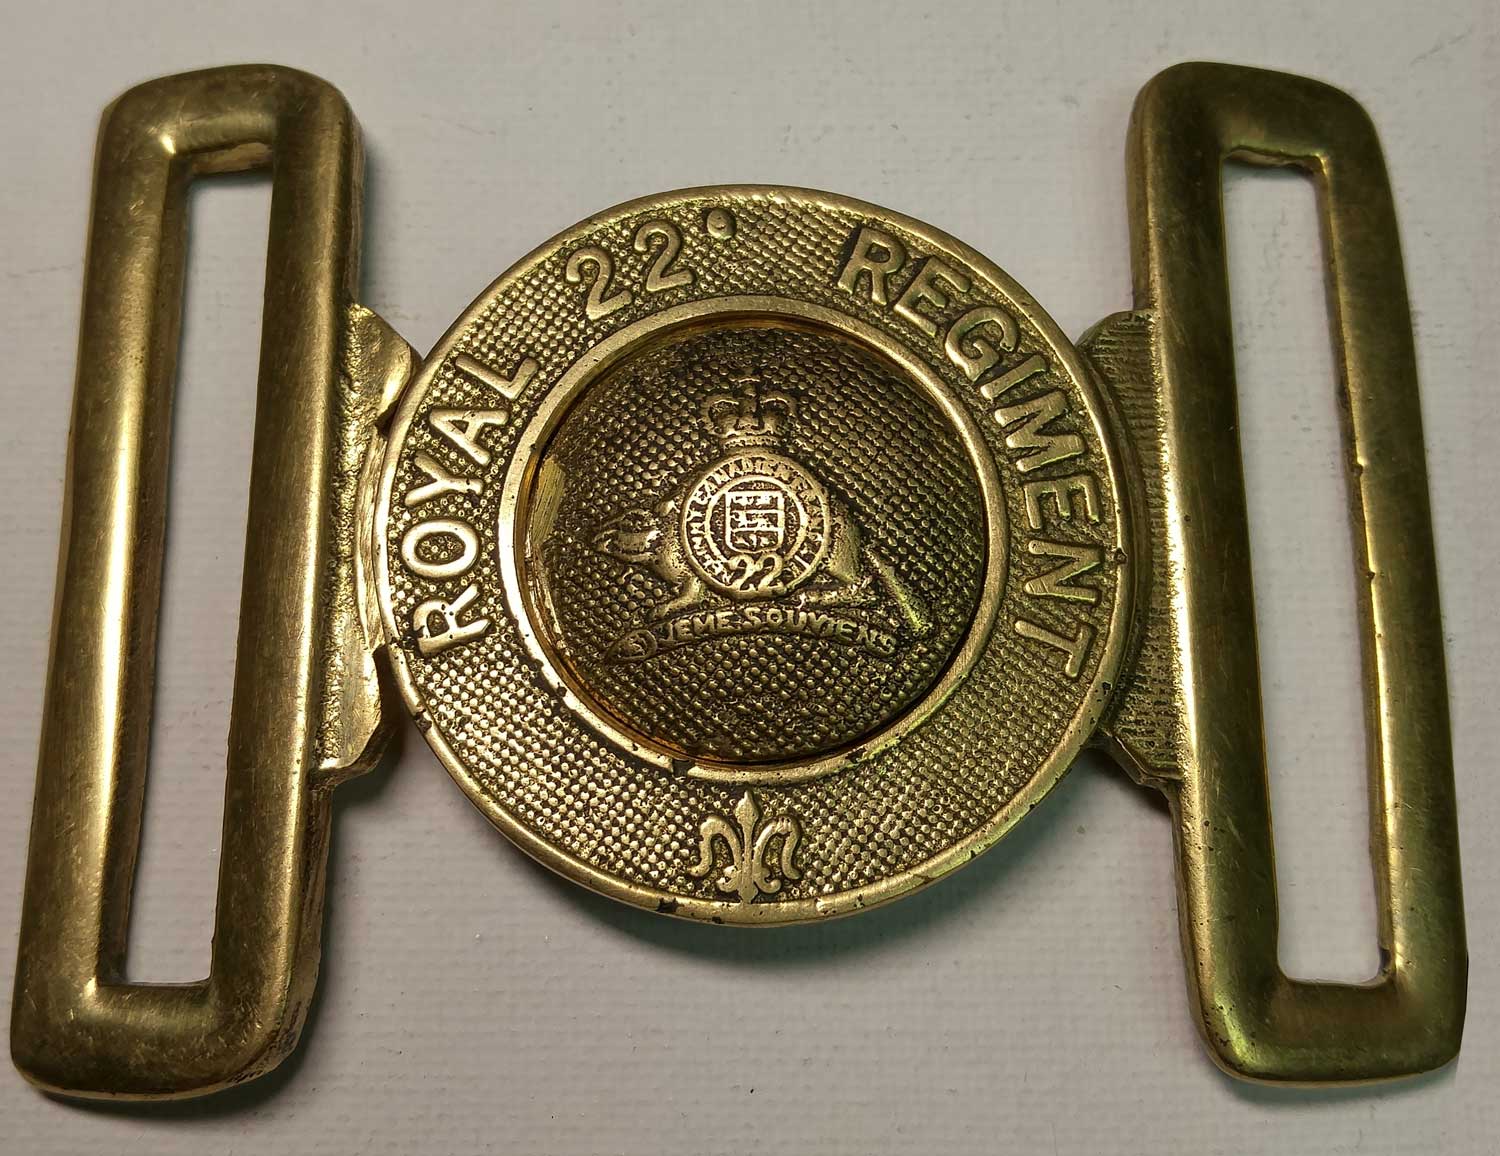 22nd Royal Regiment Belt Buckle, Brass 57mm (2-1/4")